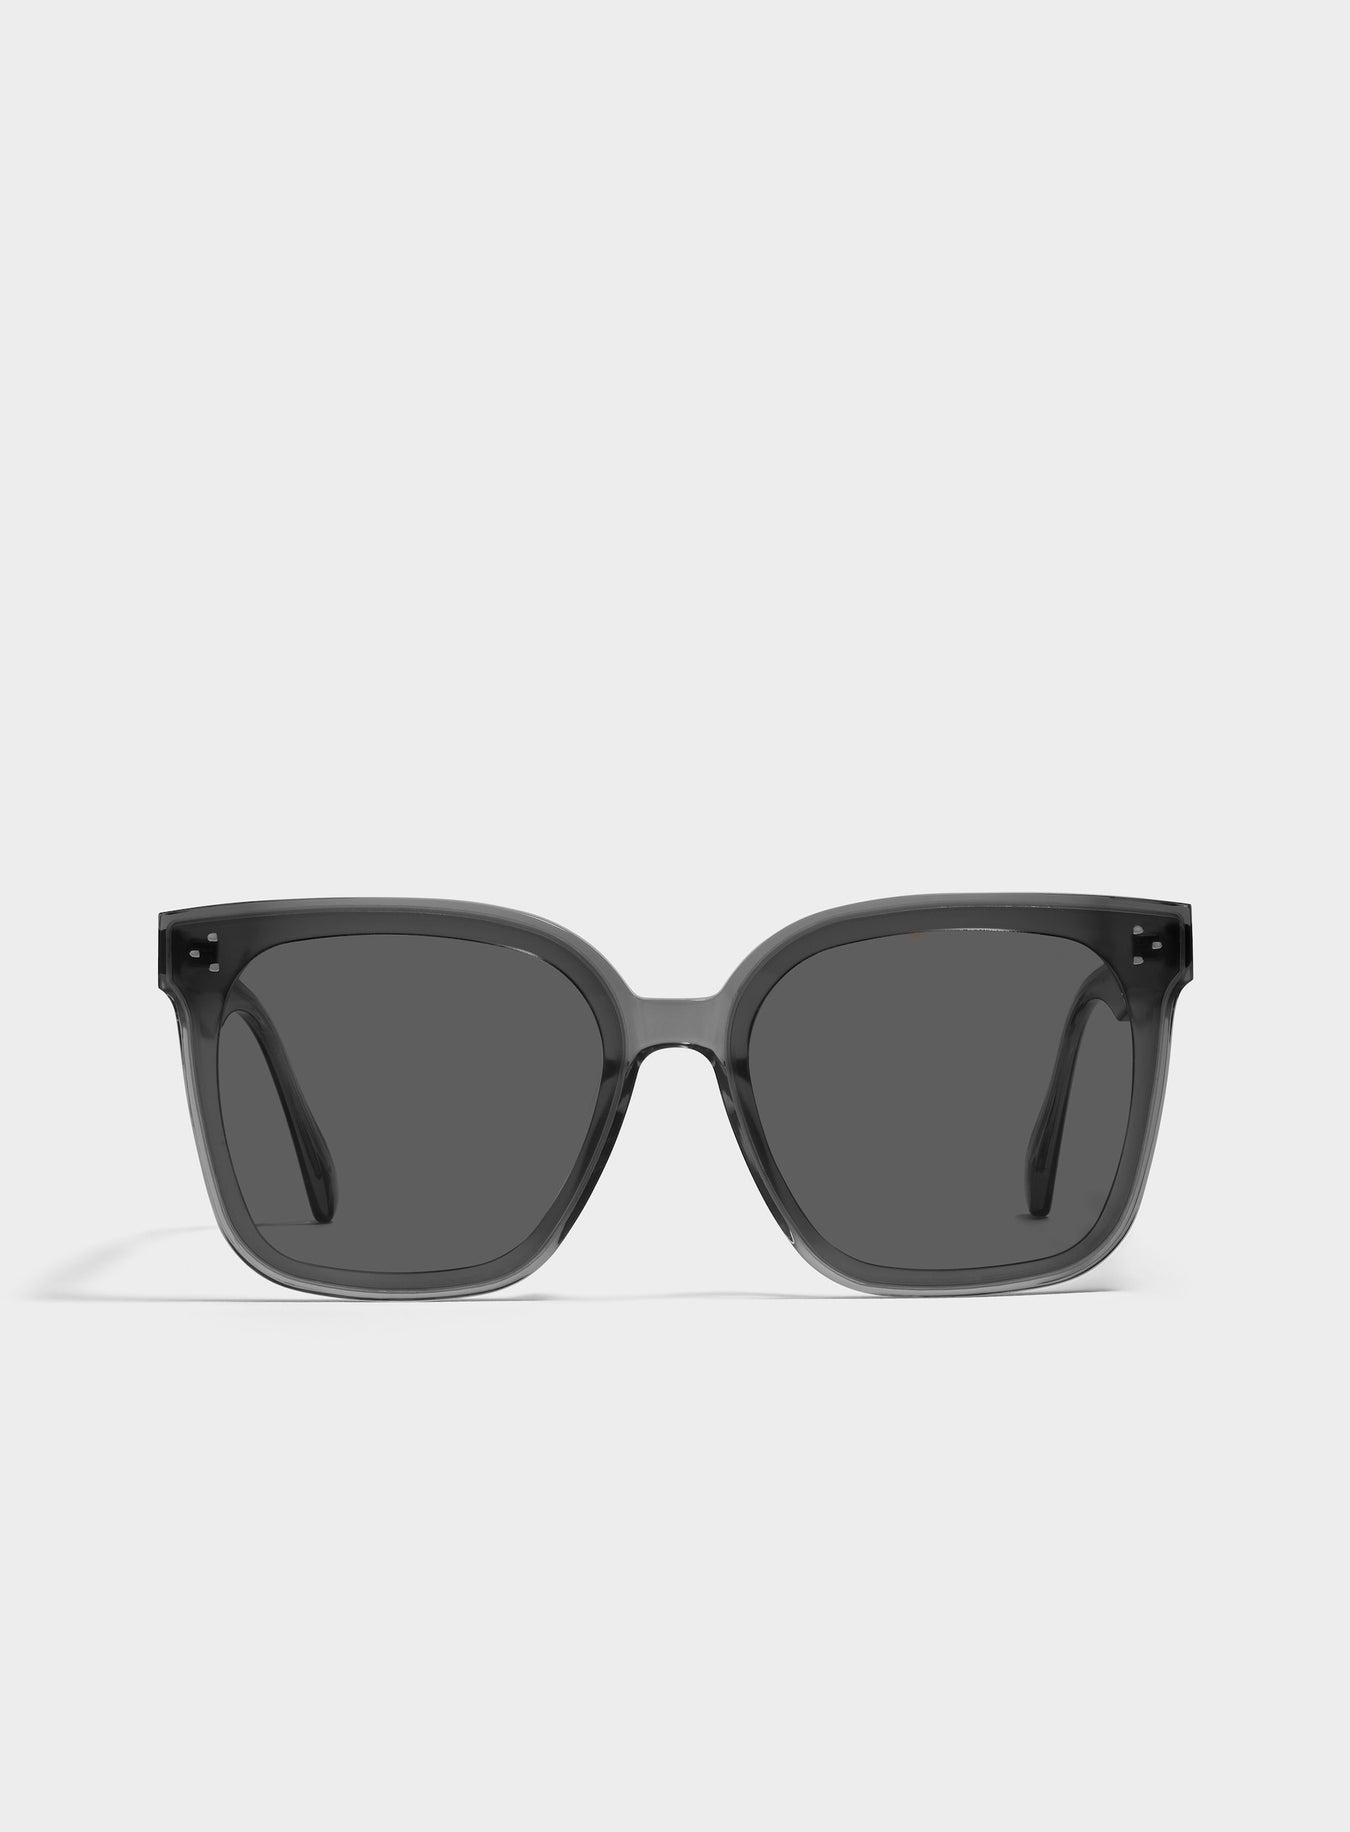 Elegant Oversized Square Frame Sunglasses - Her G1